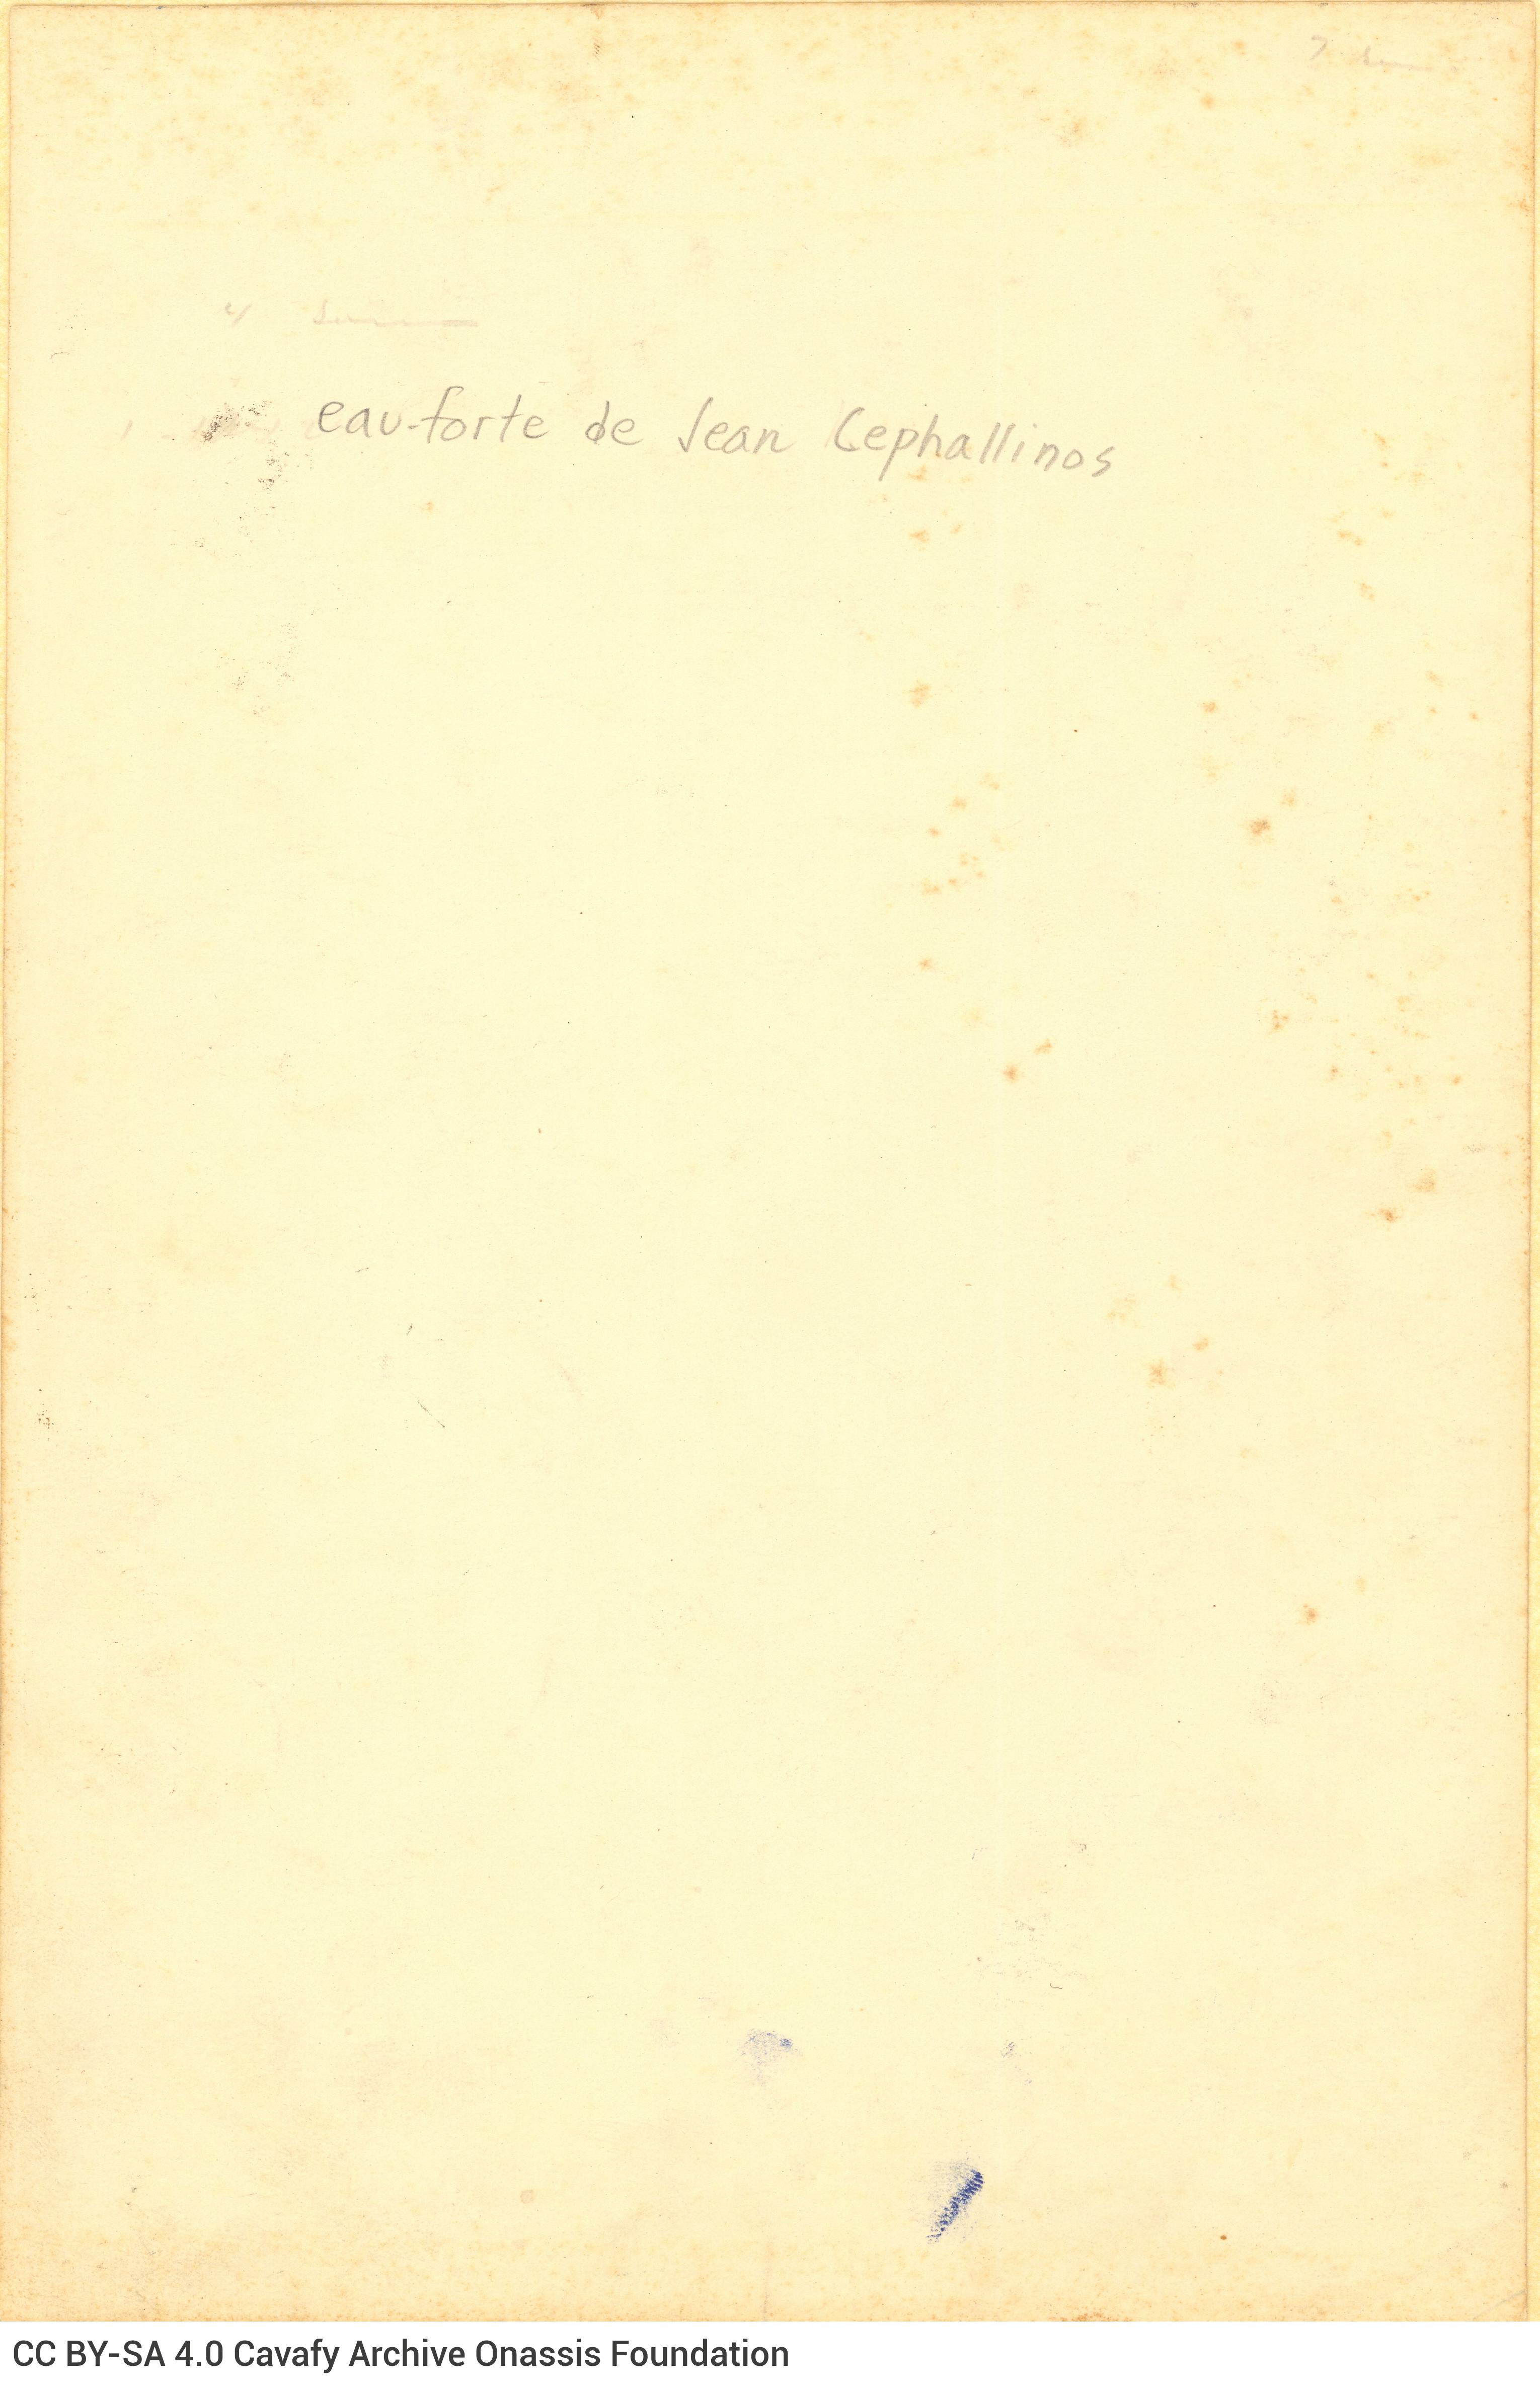 Αναπαραγωγή οξυγραφίας του χαράκτη Γιάννη Κεφαλληνού που απεικονίζ